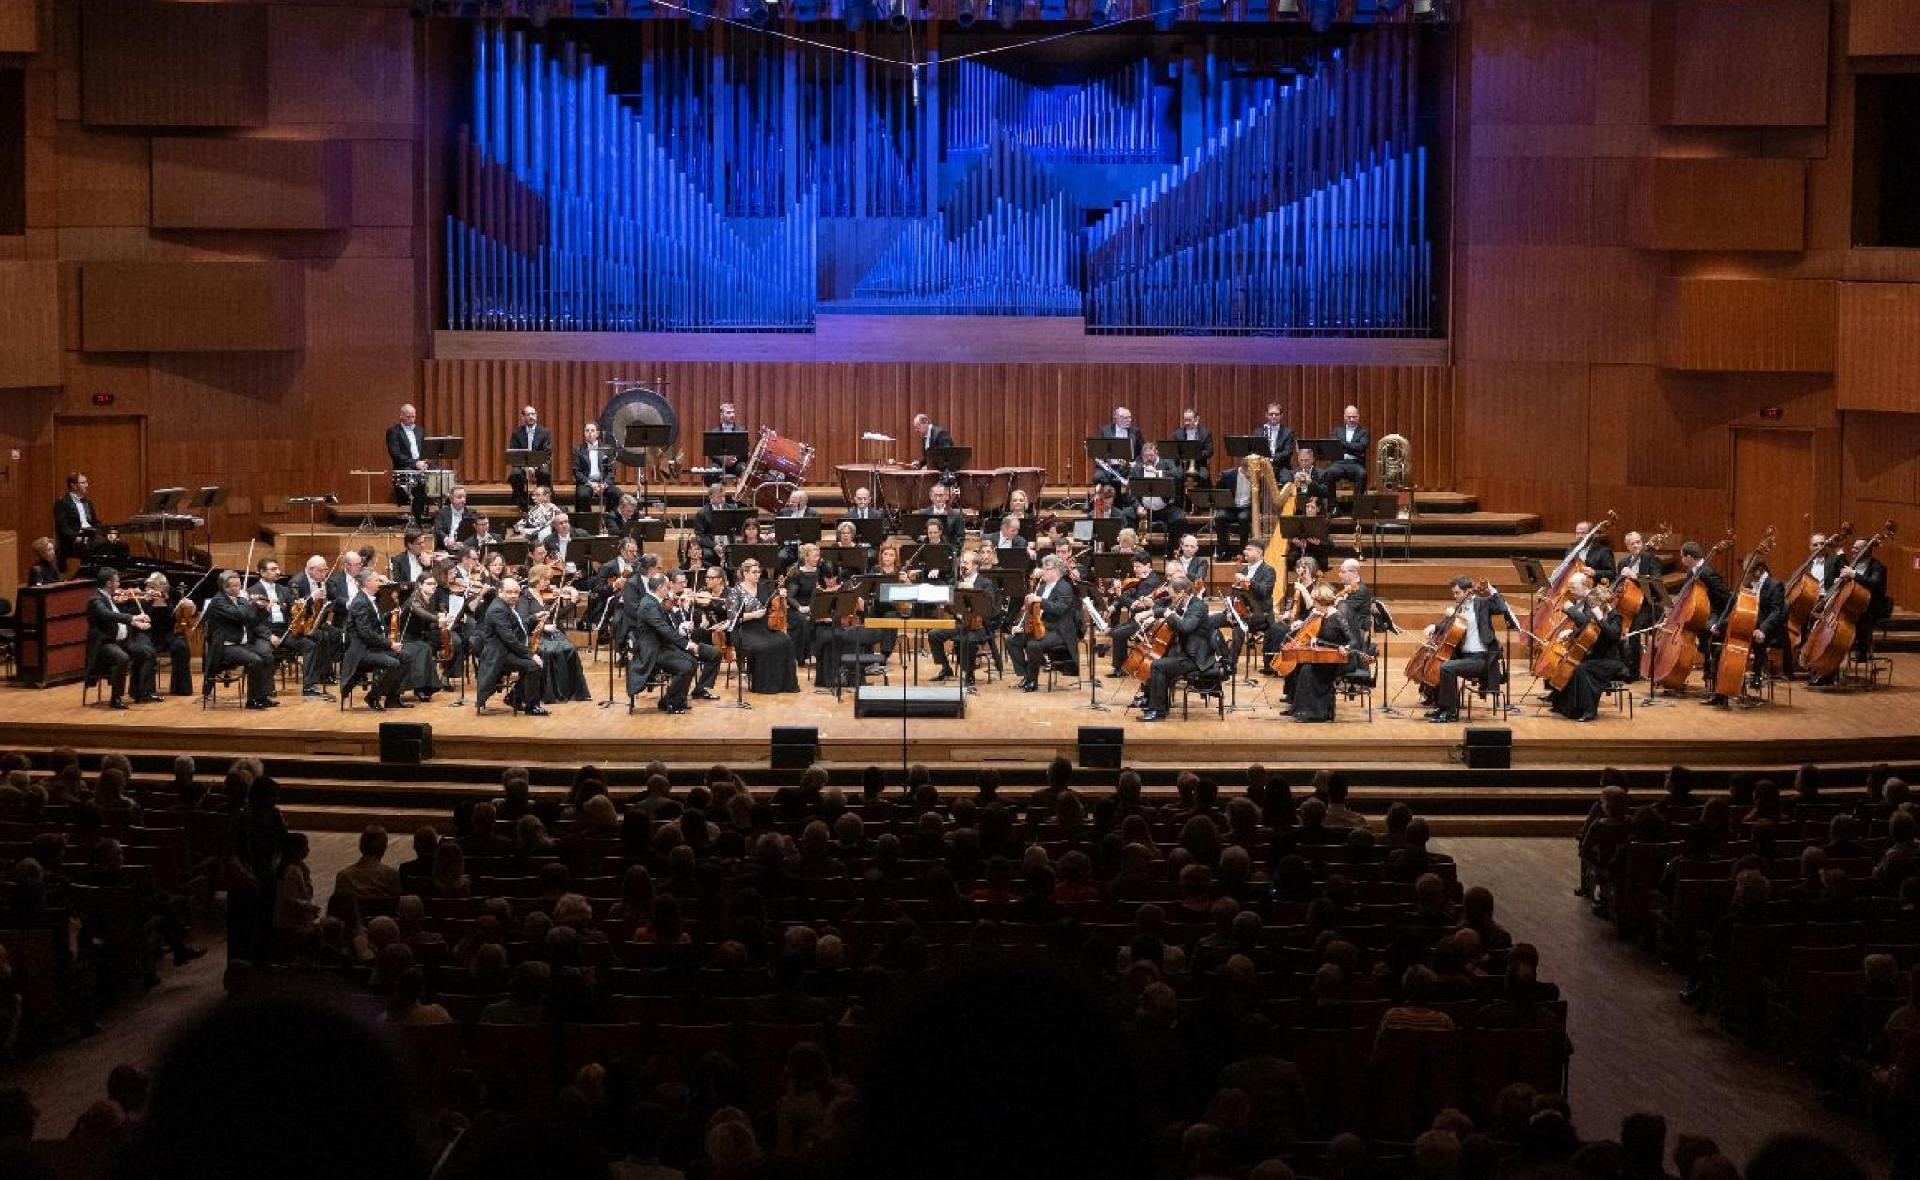 Rasprodan koncert Mađarske nacionalne filharmonije u najvećoj koncertnoj dvorani u Hrvatskoj